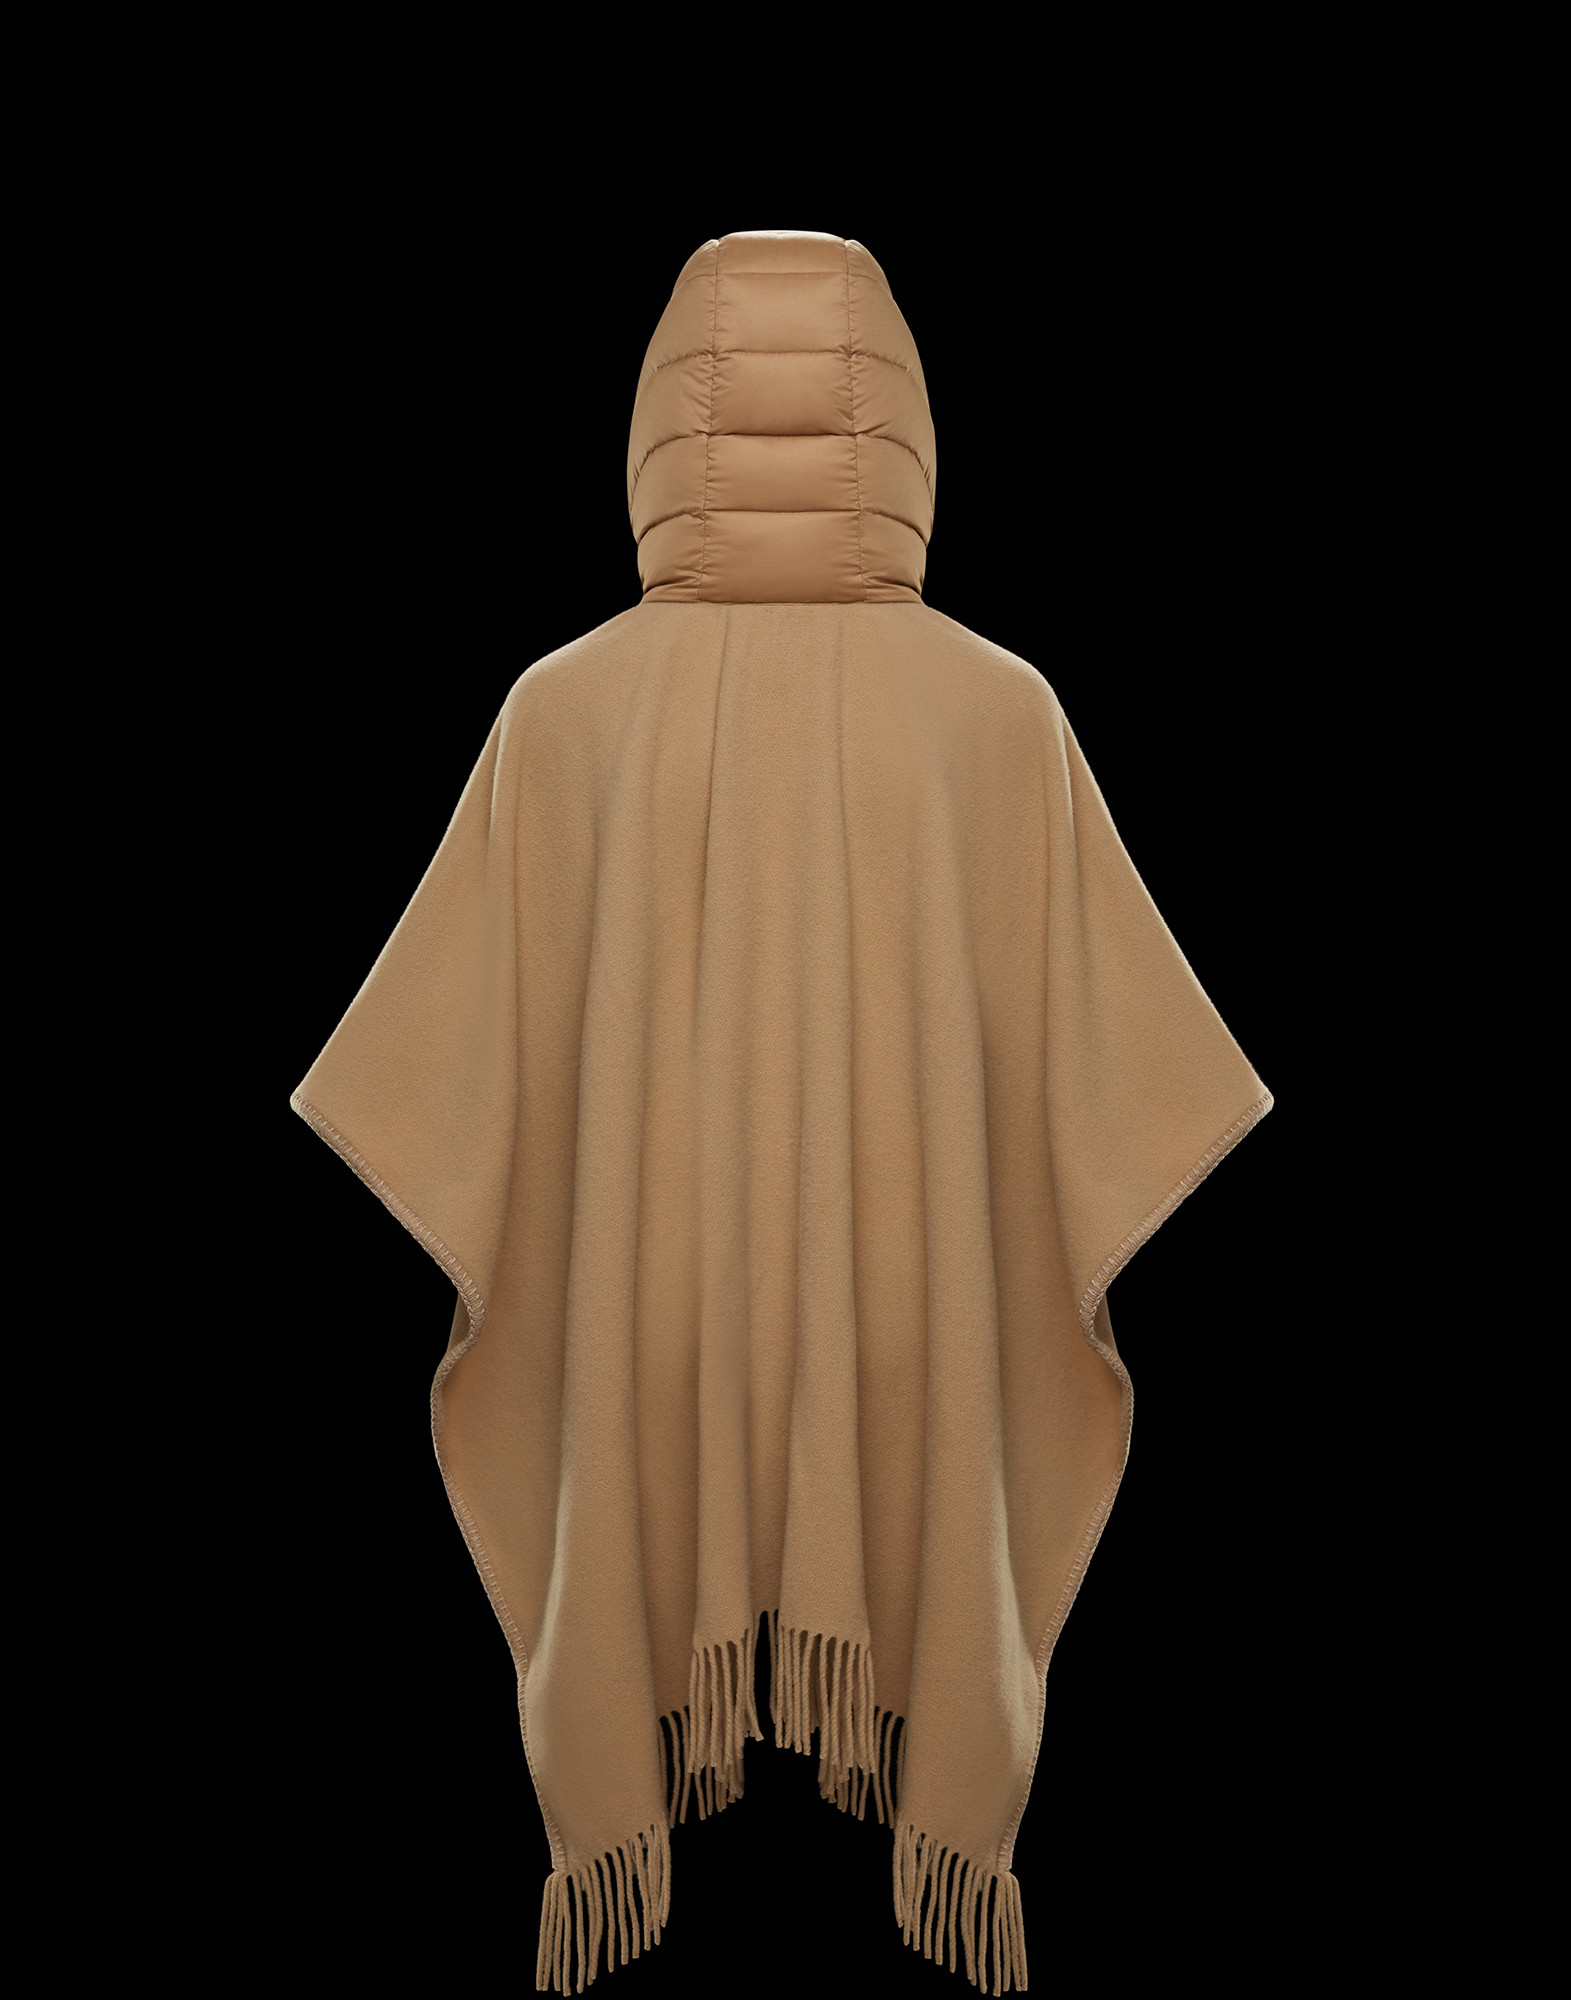 moncler cloak